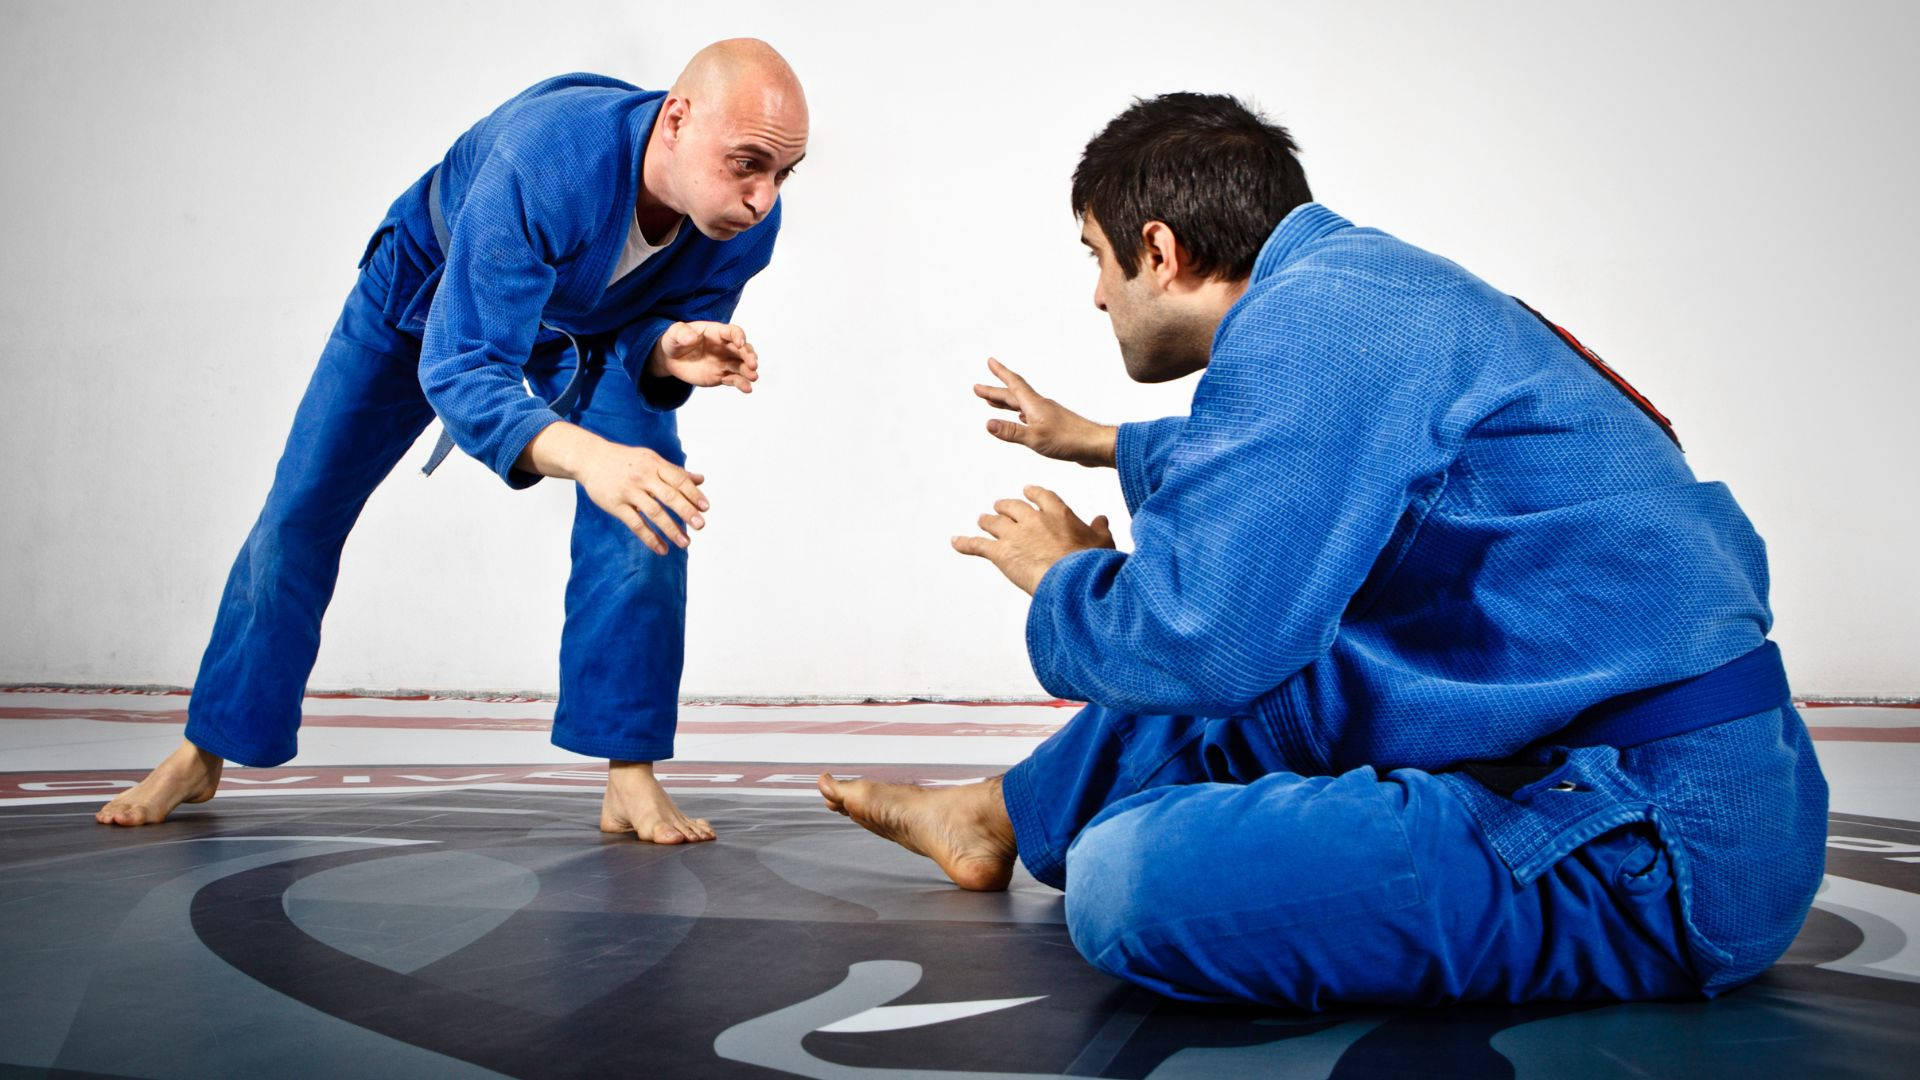 Athletic Brazilian Jiu-jitsu Fighter In Action Wallpaper